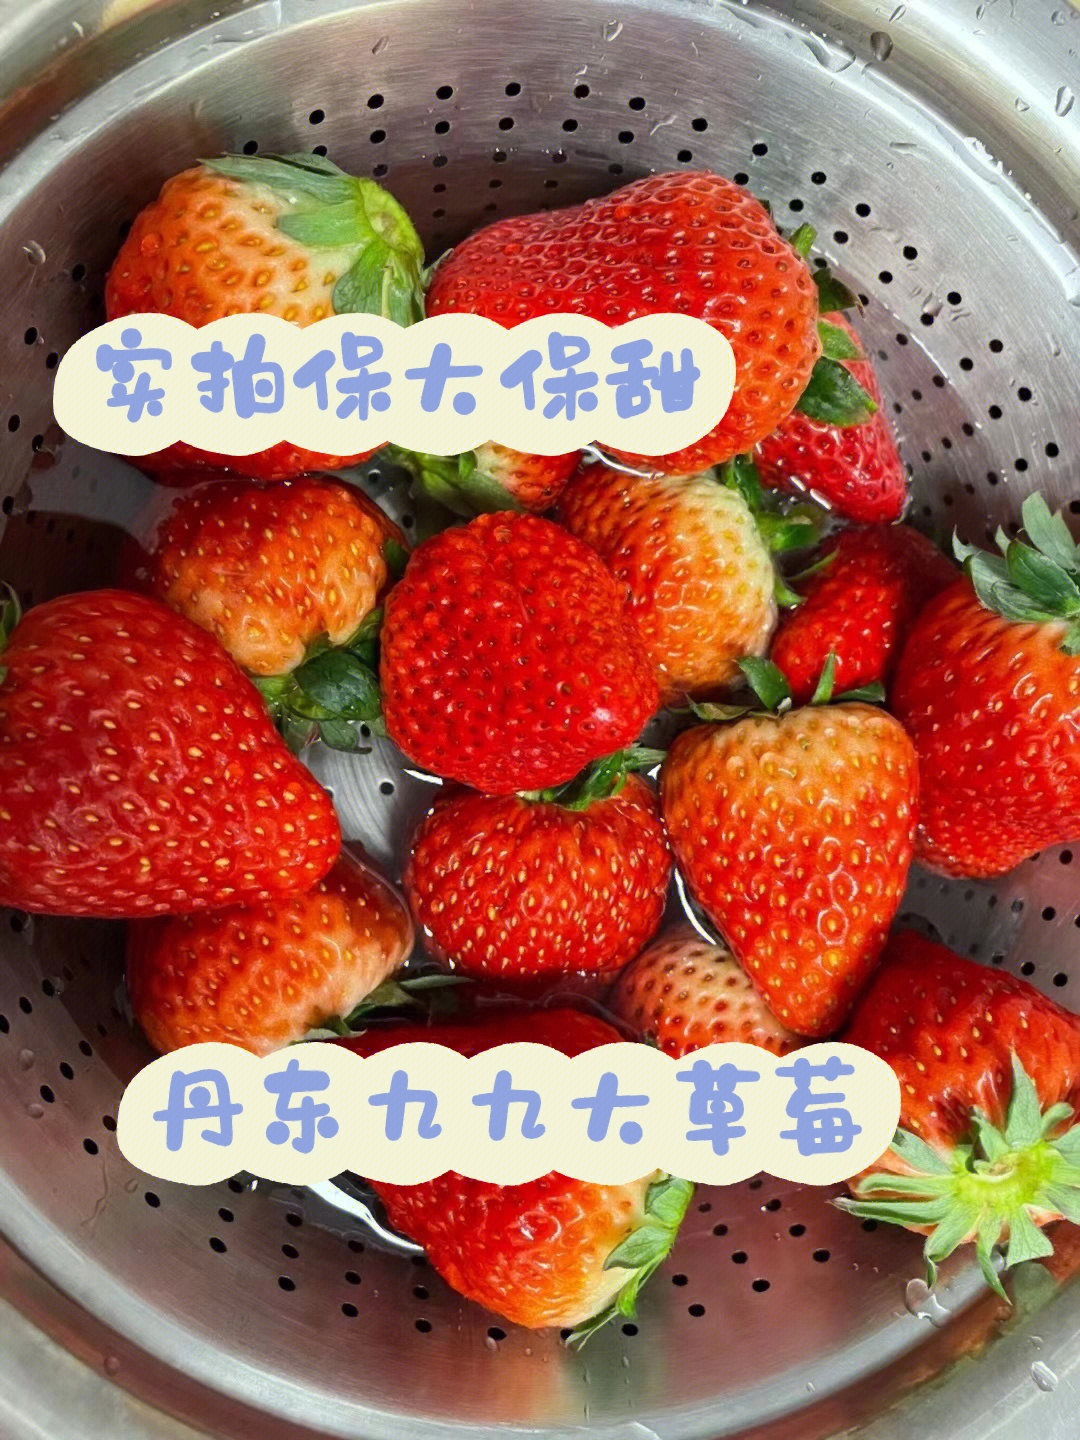 丹东牛奶草莓简介图片